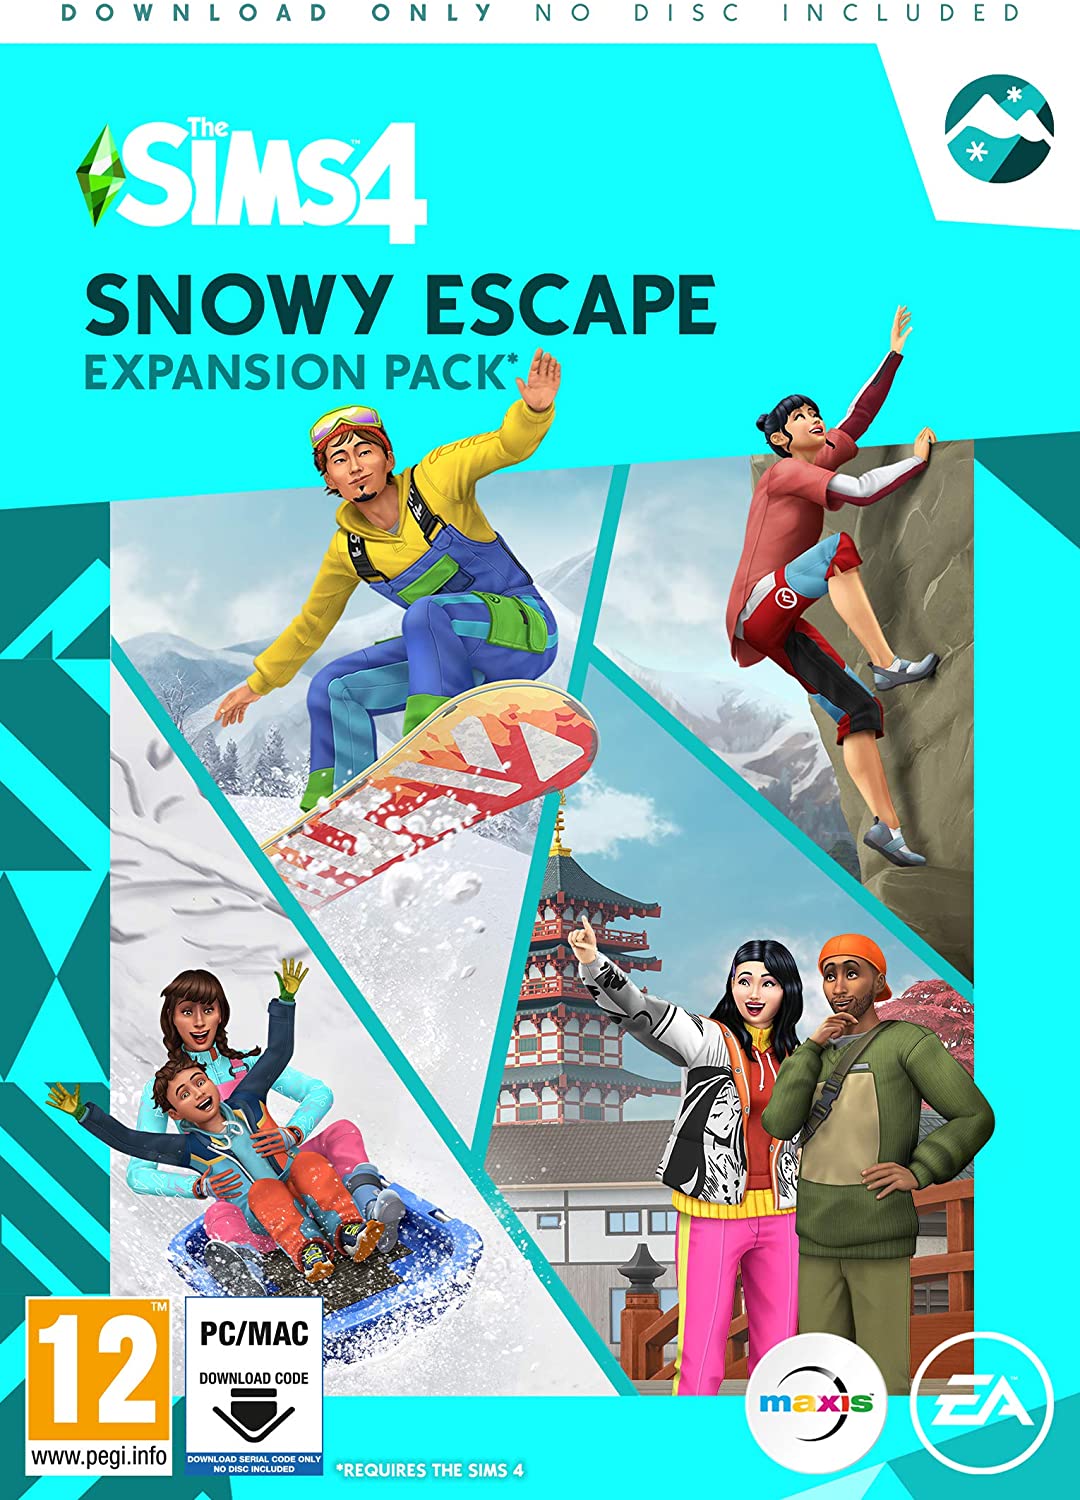 The Sims 4: Snowy Escape CD Key for Origin